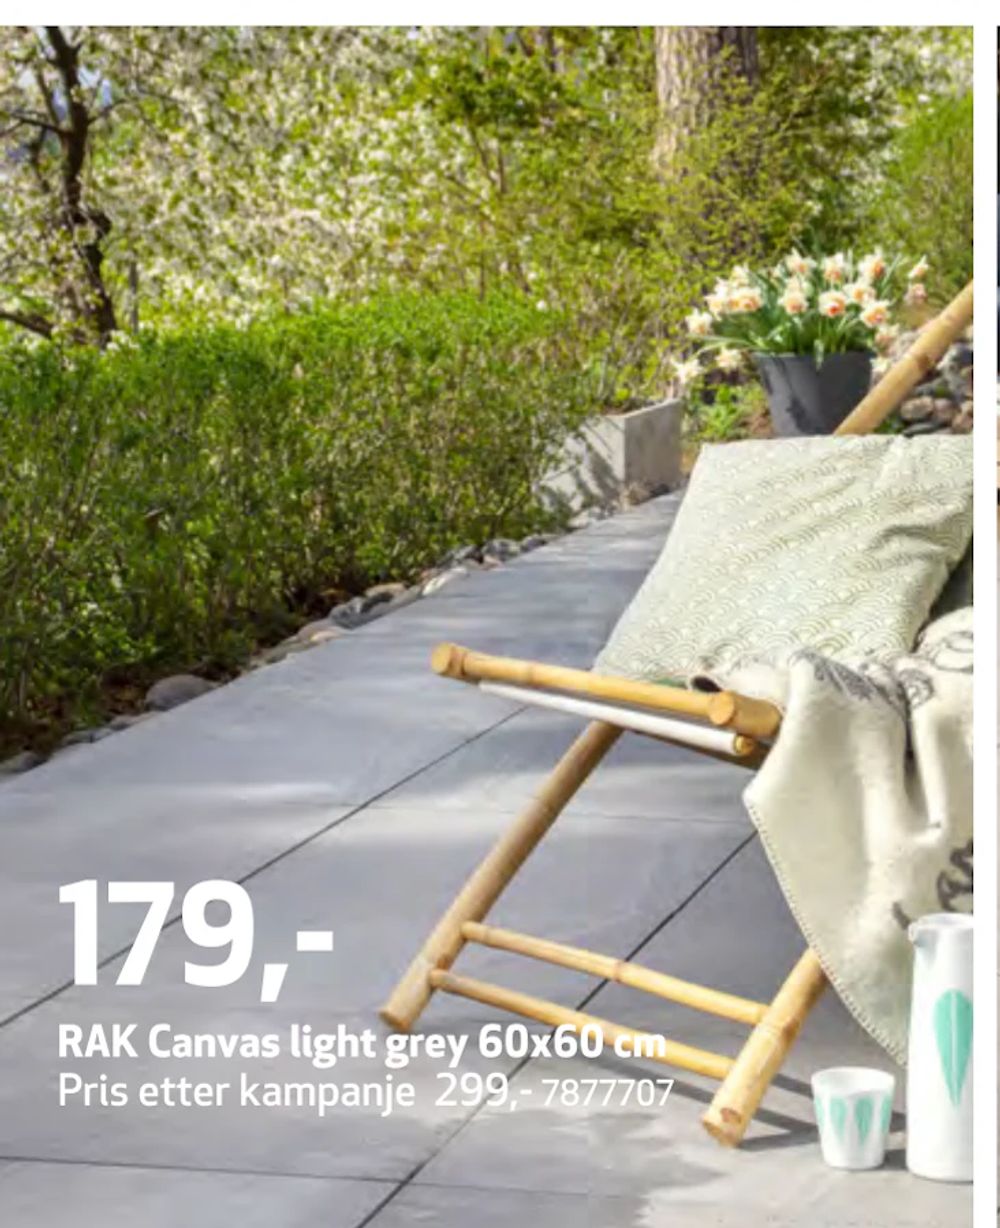 Tilbud på RAK Canvas light grey 60x60 cm fra Flisekompaniet til 179 kr